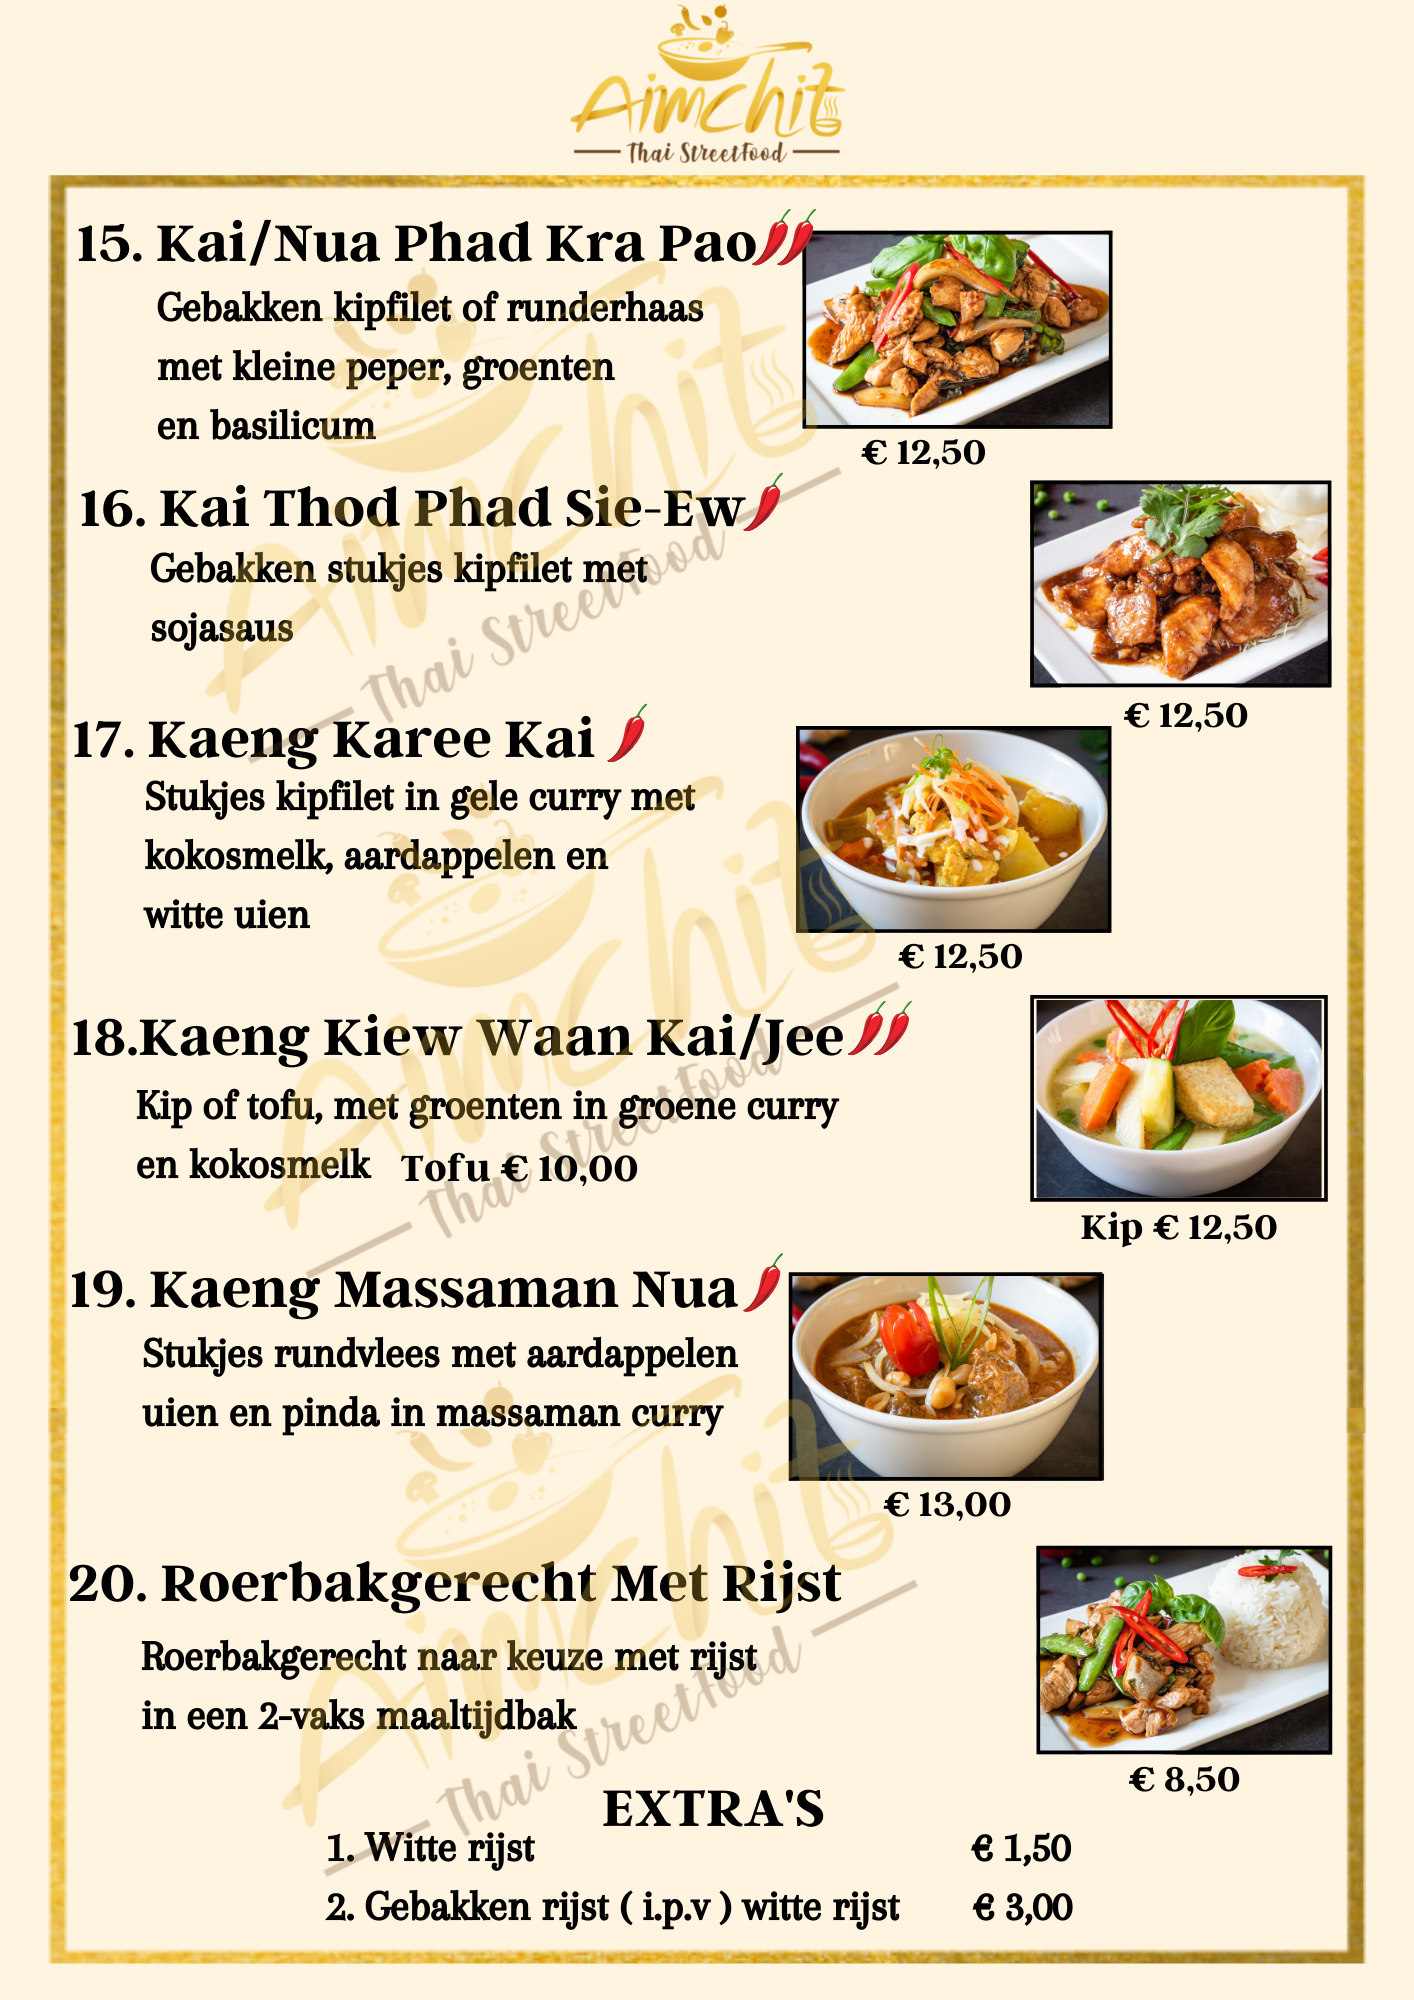 Aimchit Thai Streetfood